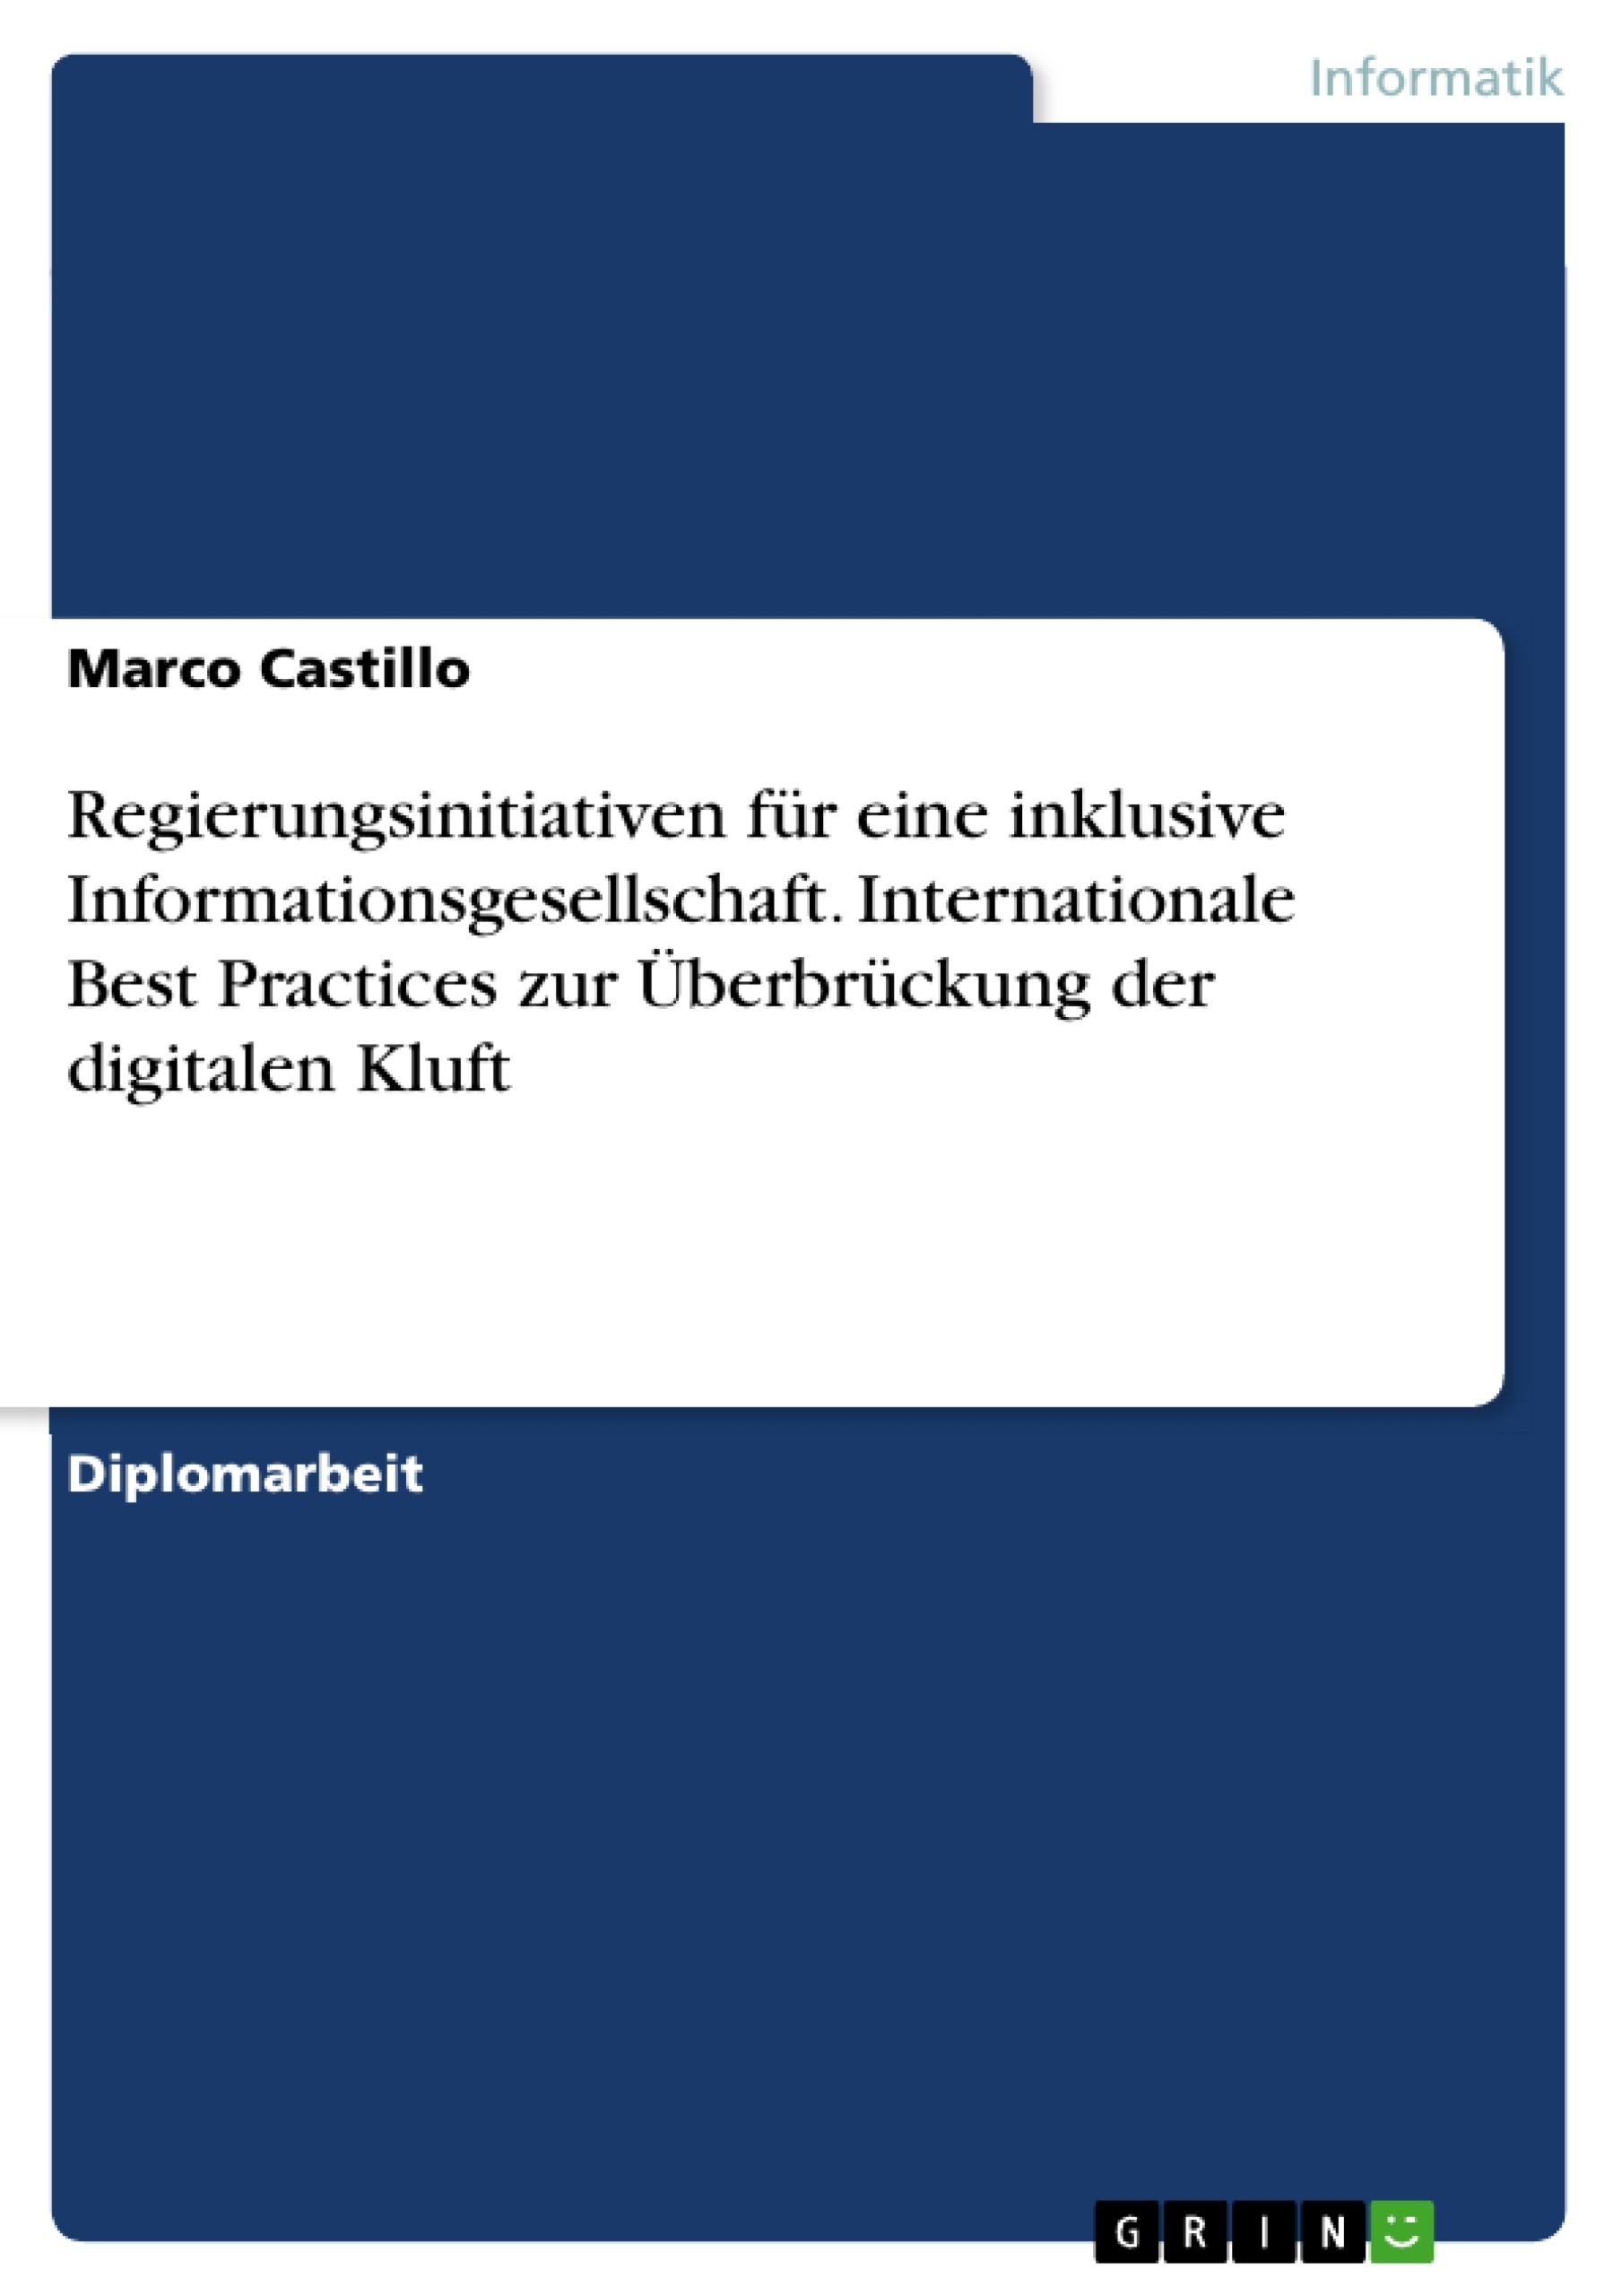 Título: Regierungsinitiativen für eine inklusive Informationsgesellschaft. Internationale Best Practices zur Überbrückung der digitalen Kluft